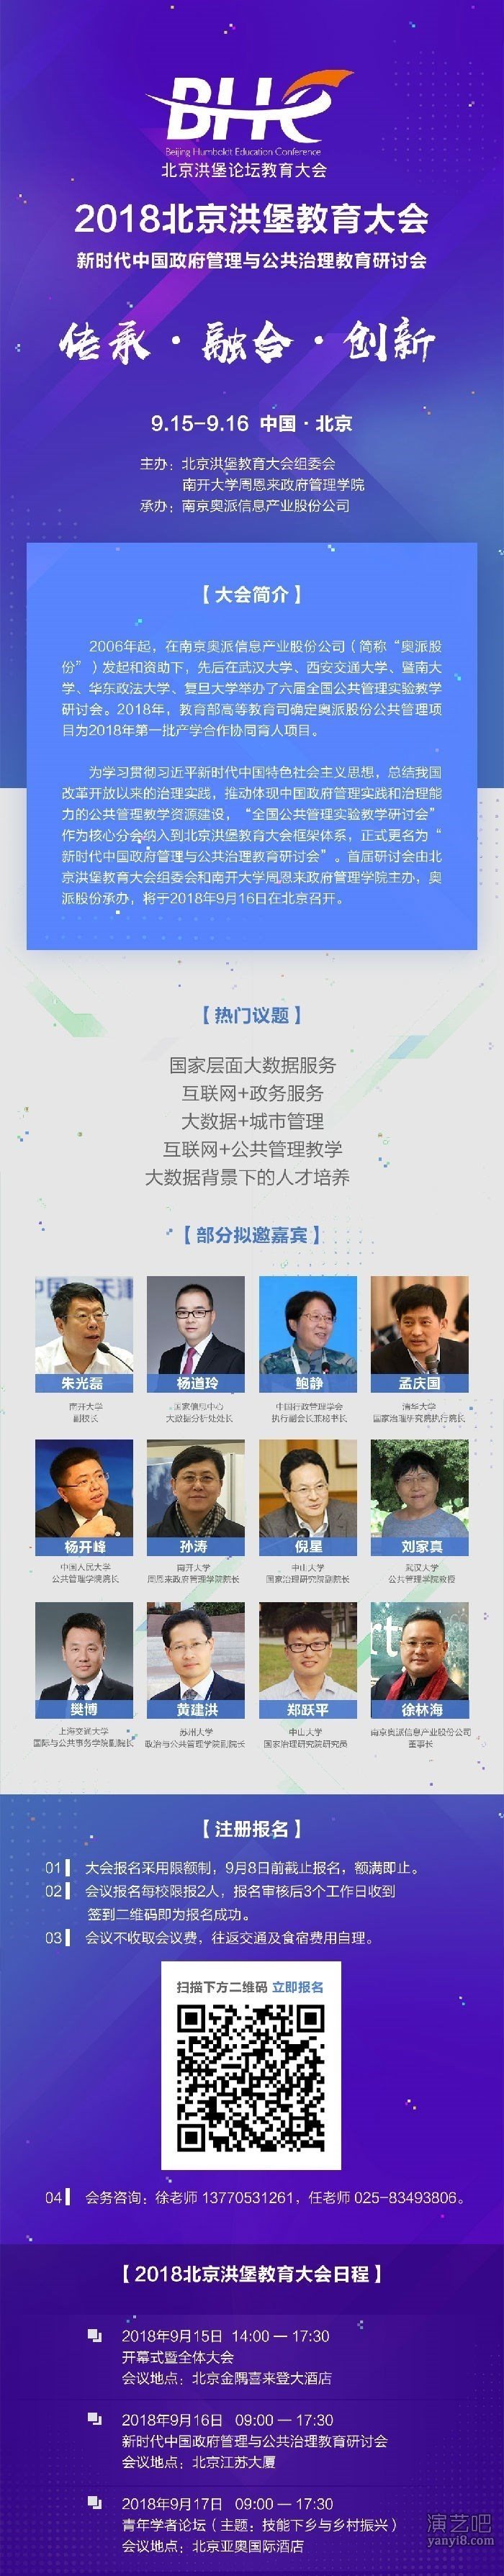 北京洪堡教育大会并同期举办数字经济与新商科人才培养